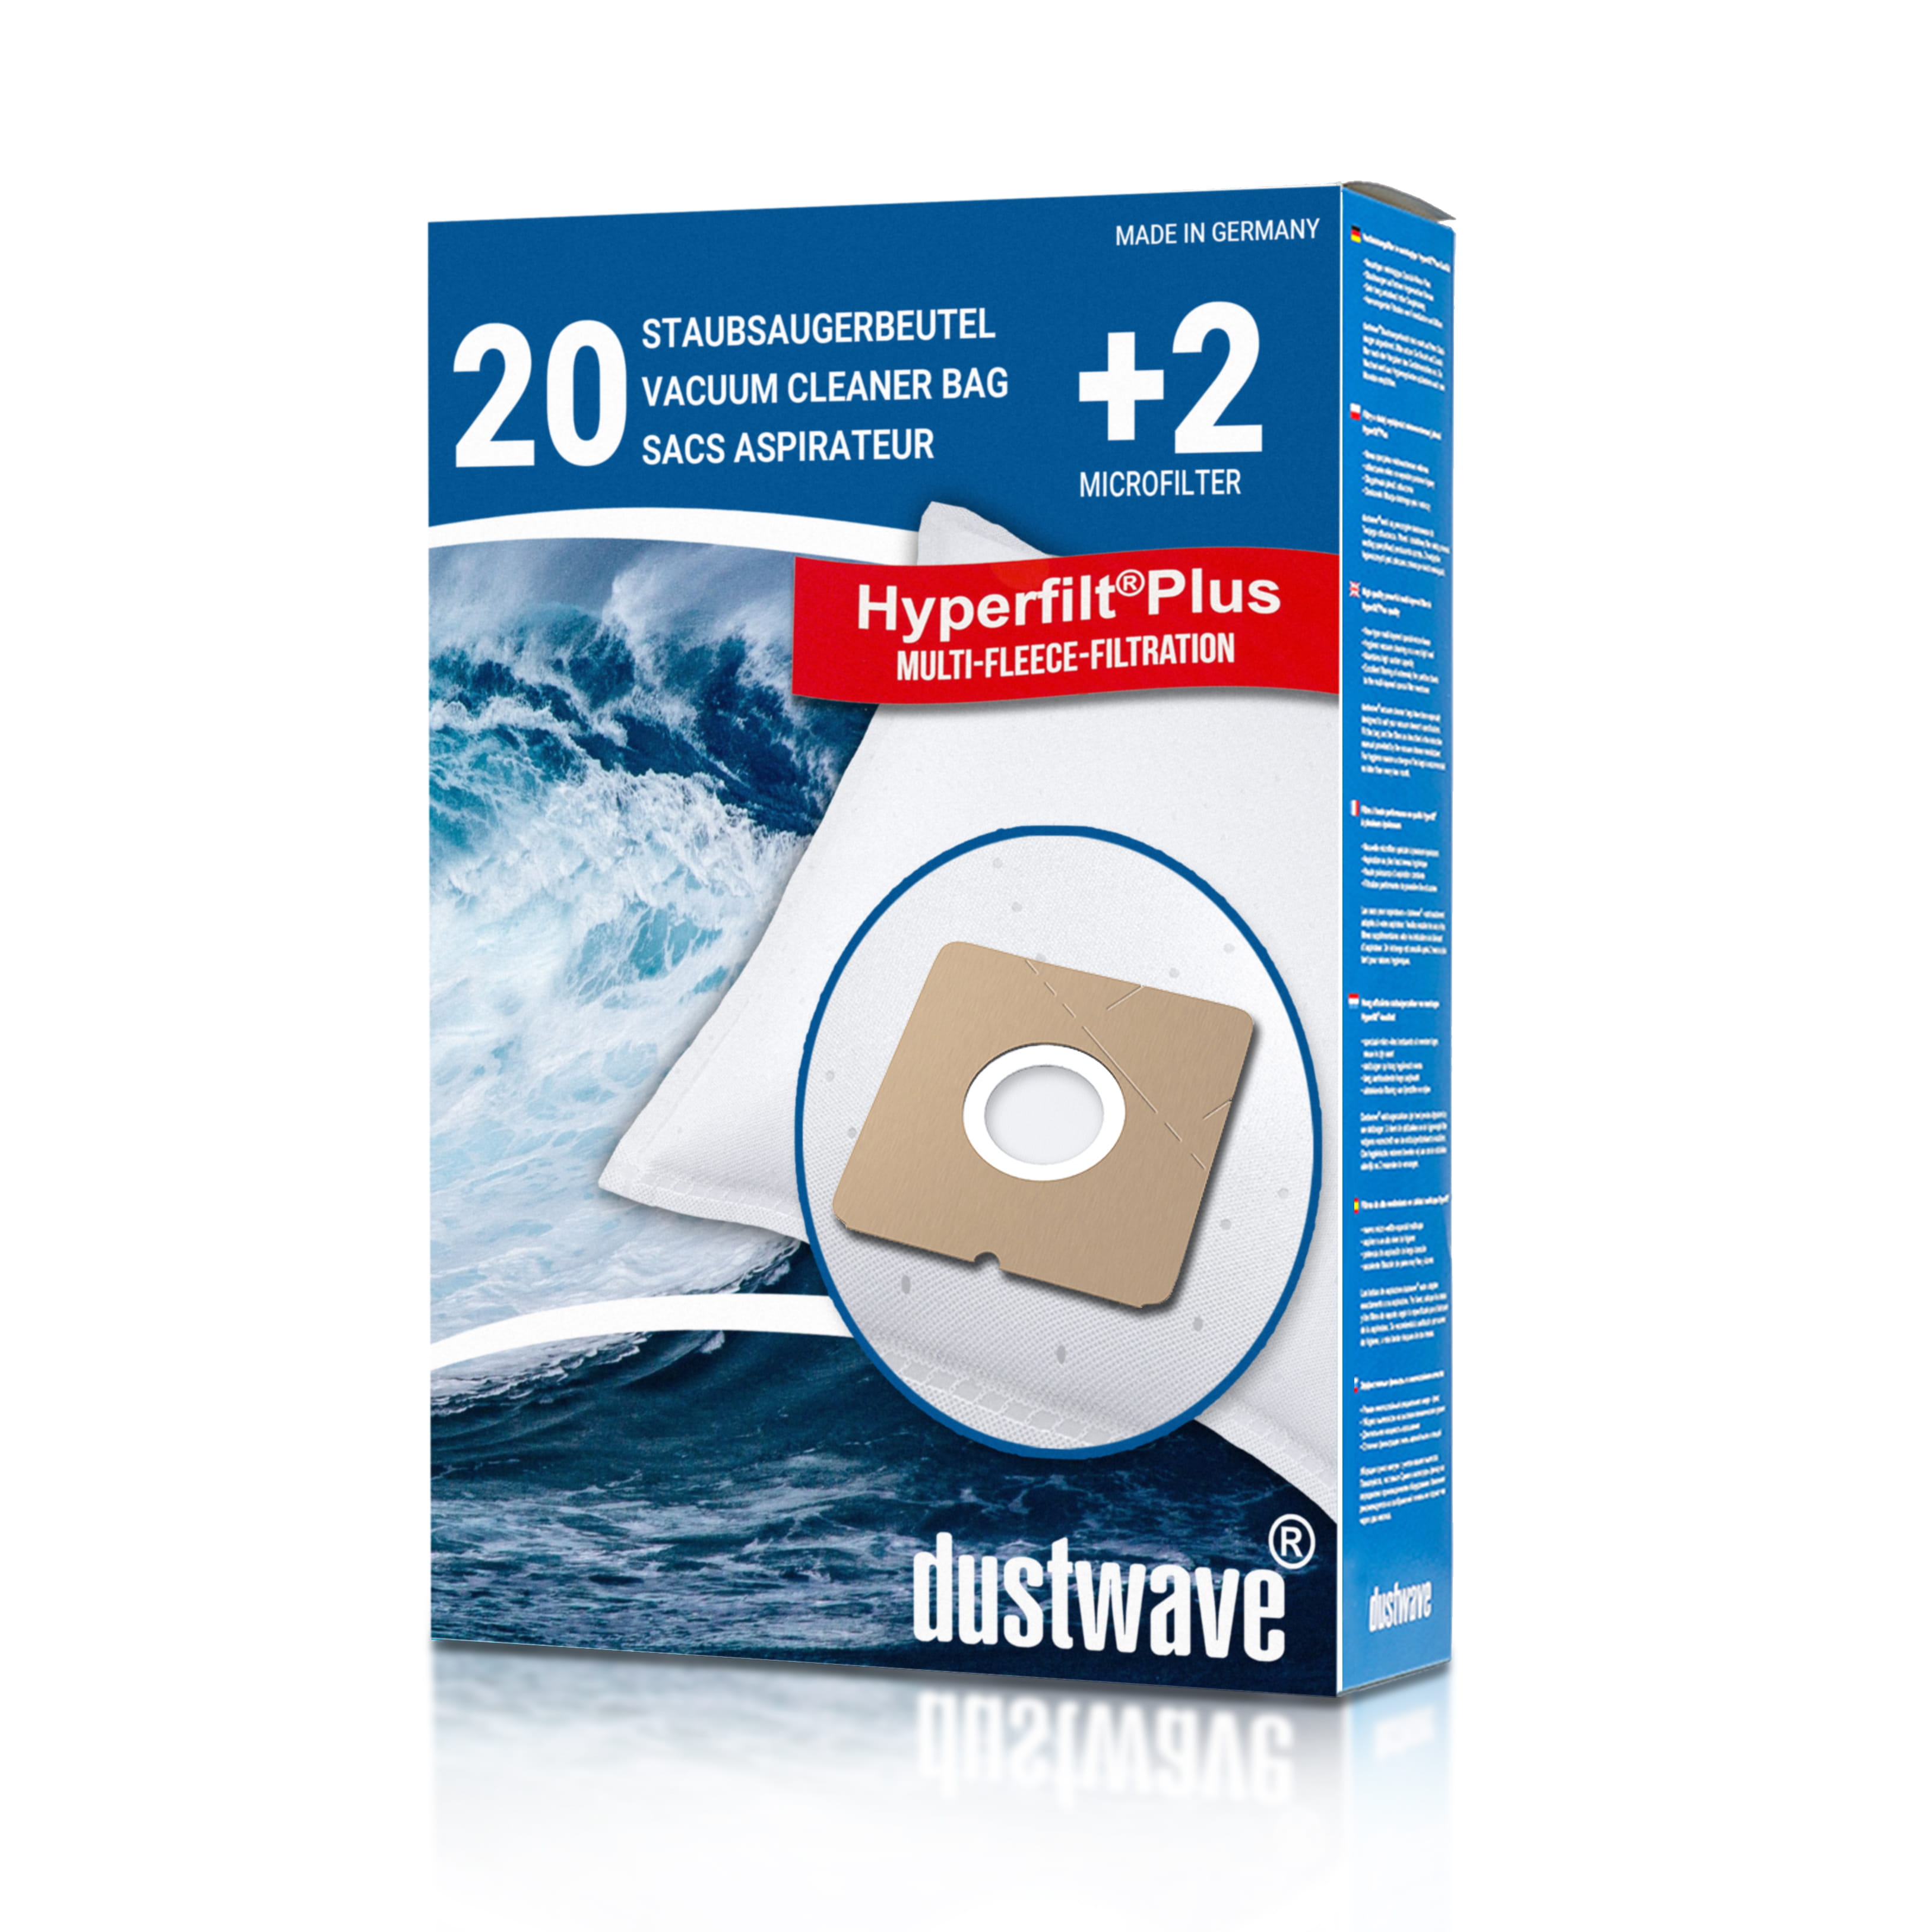 Dustwave® 20 Staubsaugerbeutel für ADMEA YL 110 / YL110 - hocheffizient mit Hygieneverschluss - Made in Germany